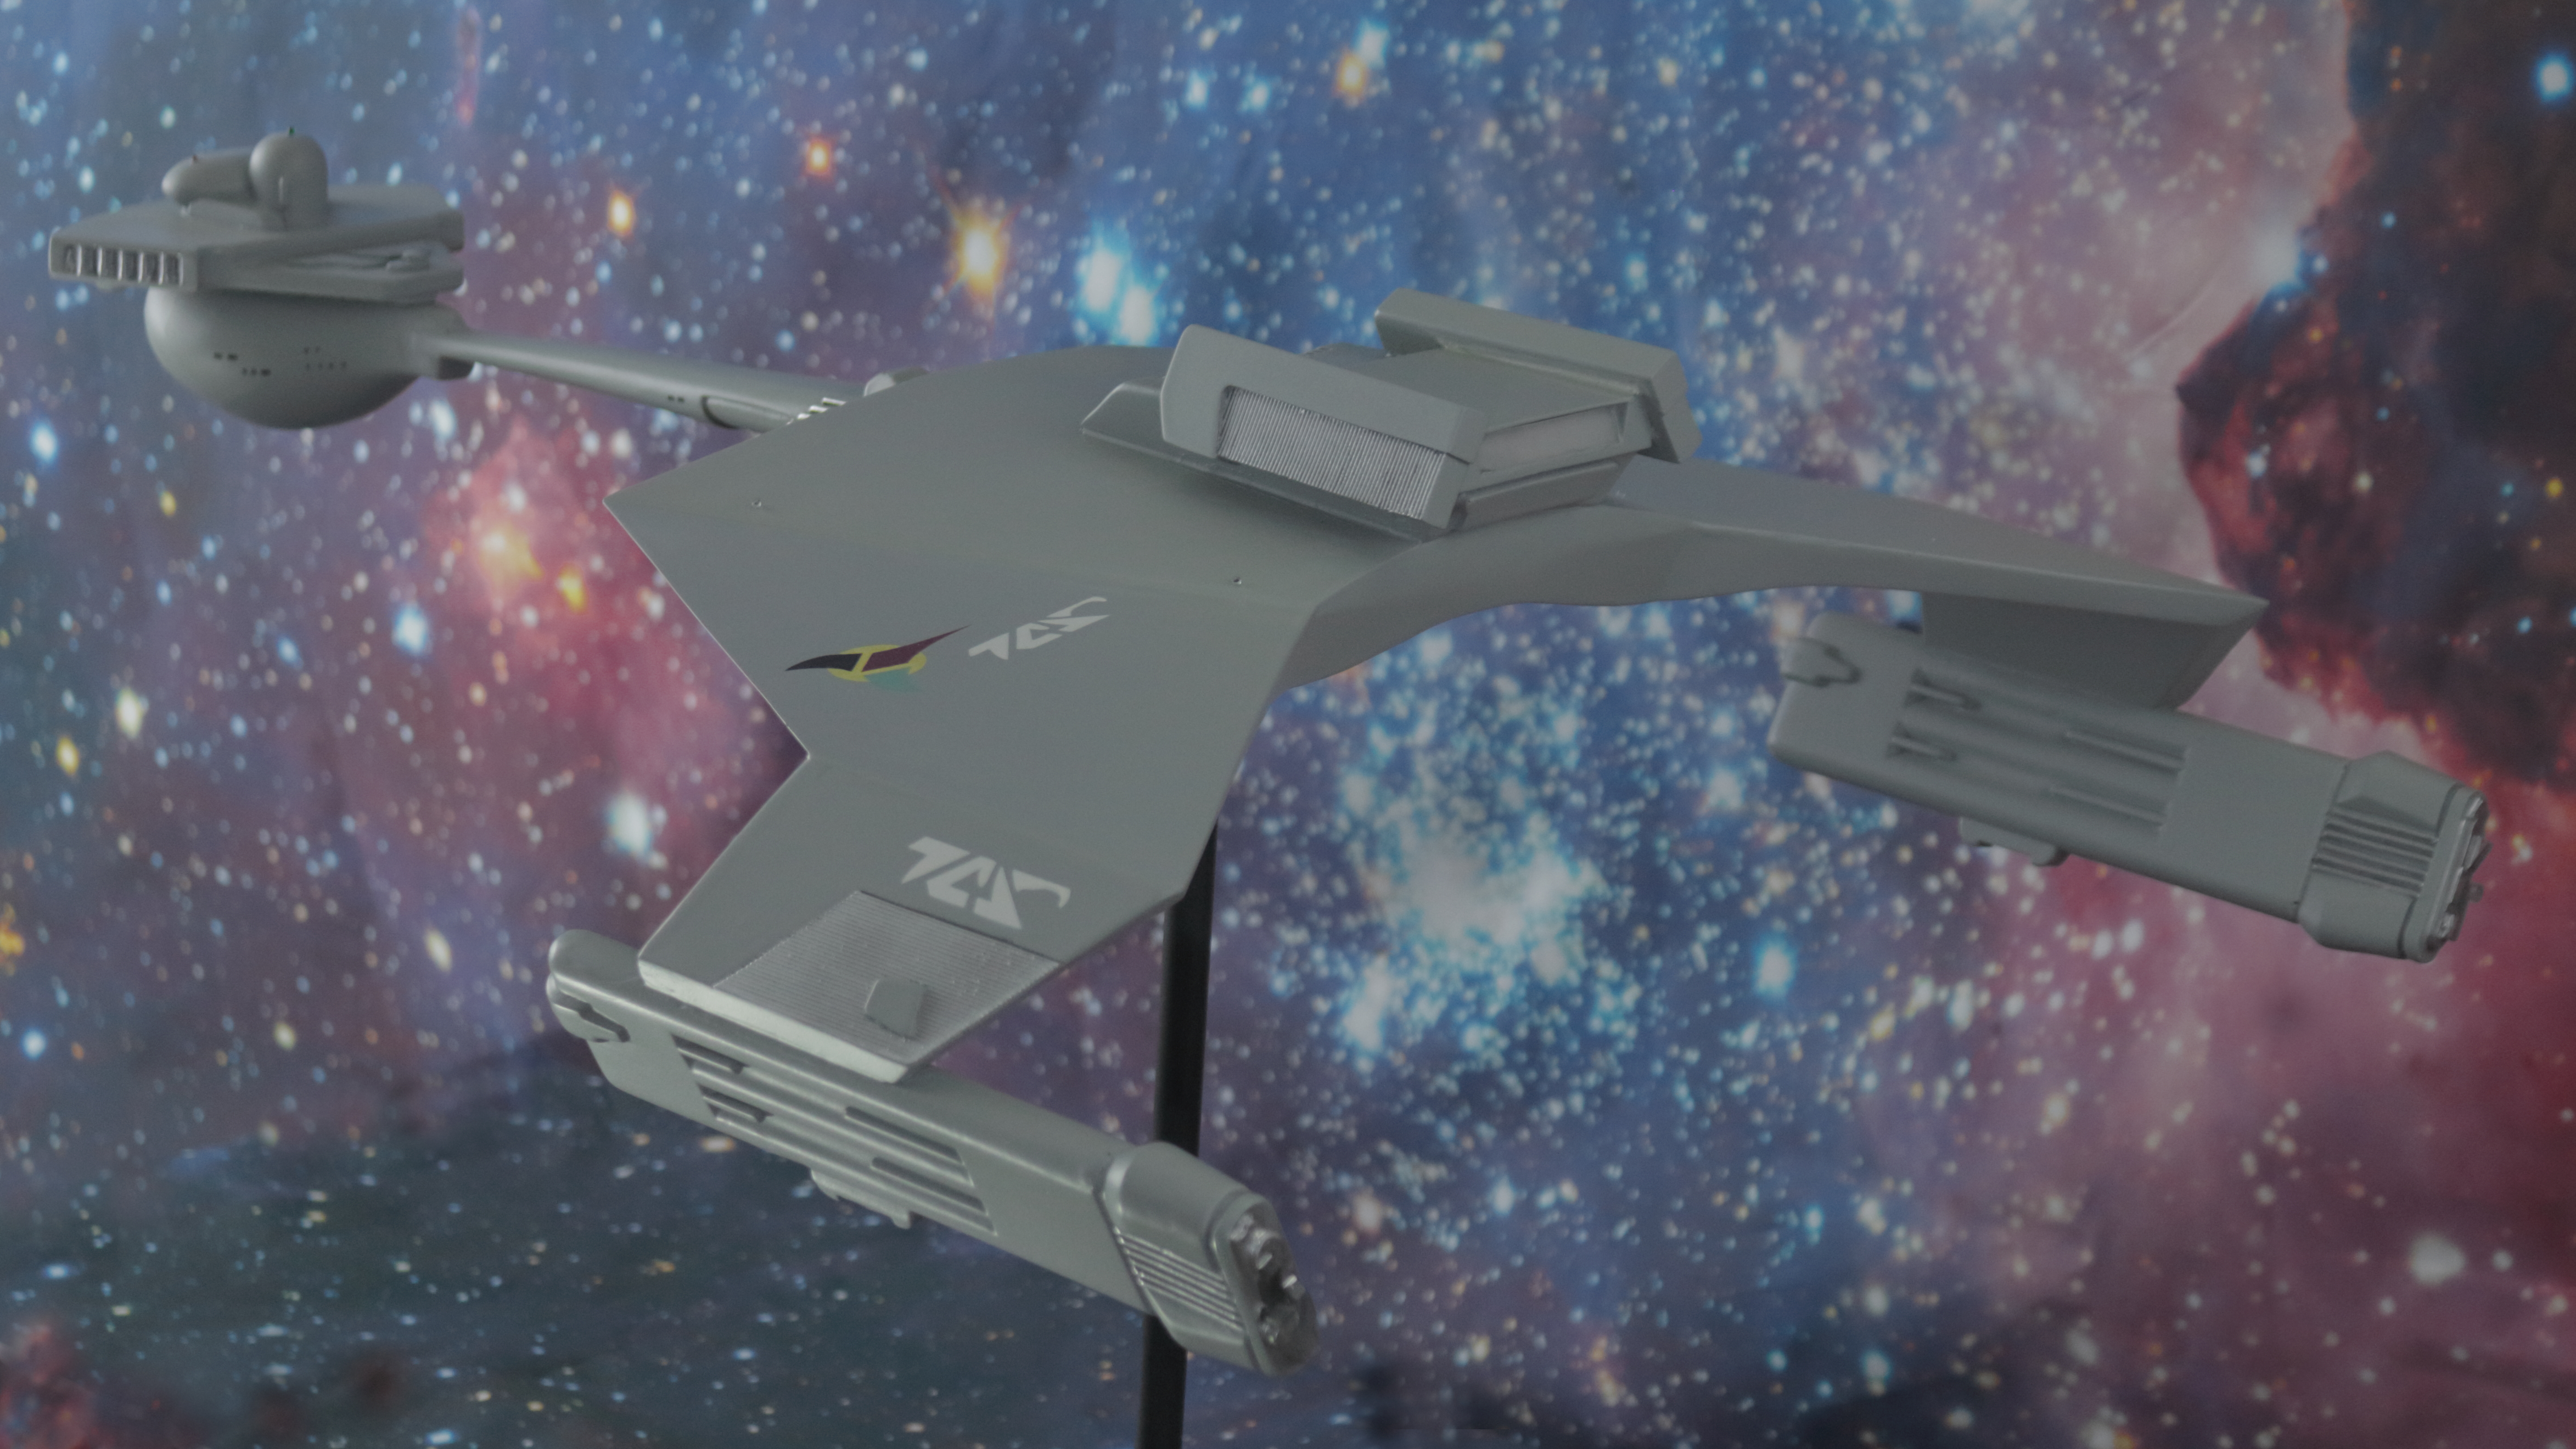 Klingon D7 1:305 scale